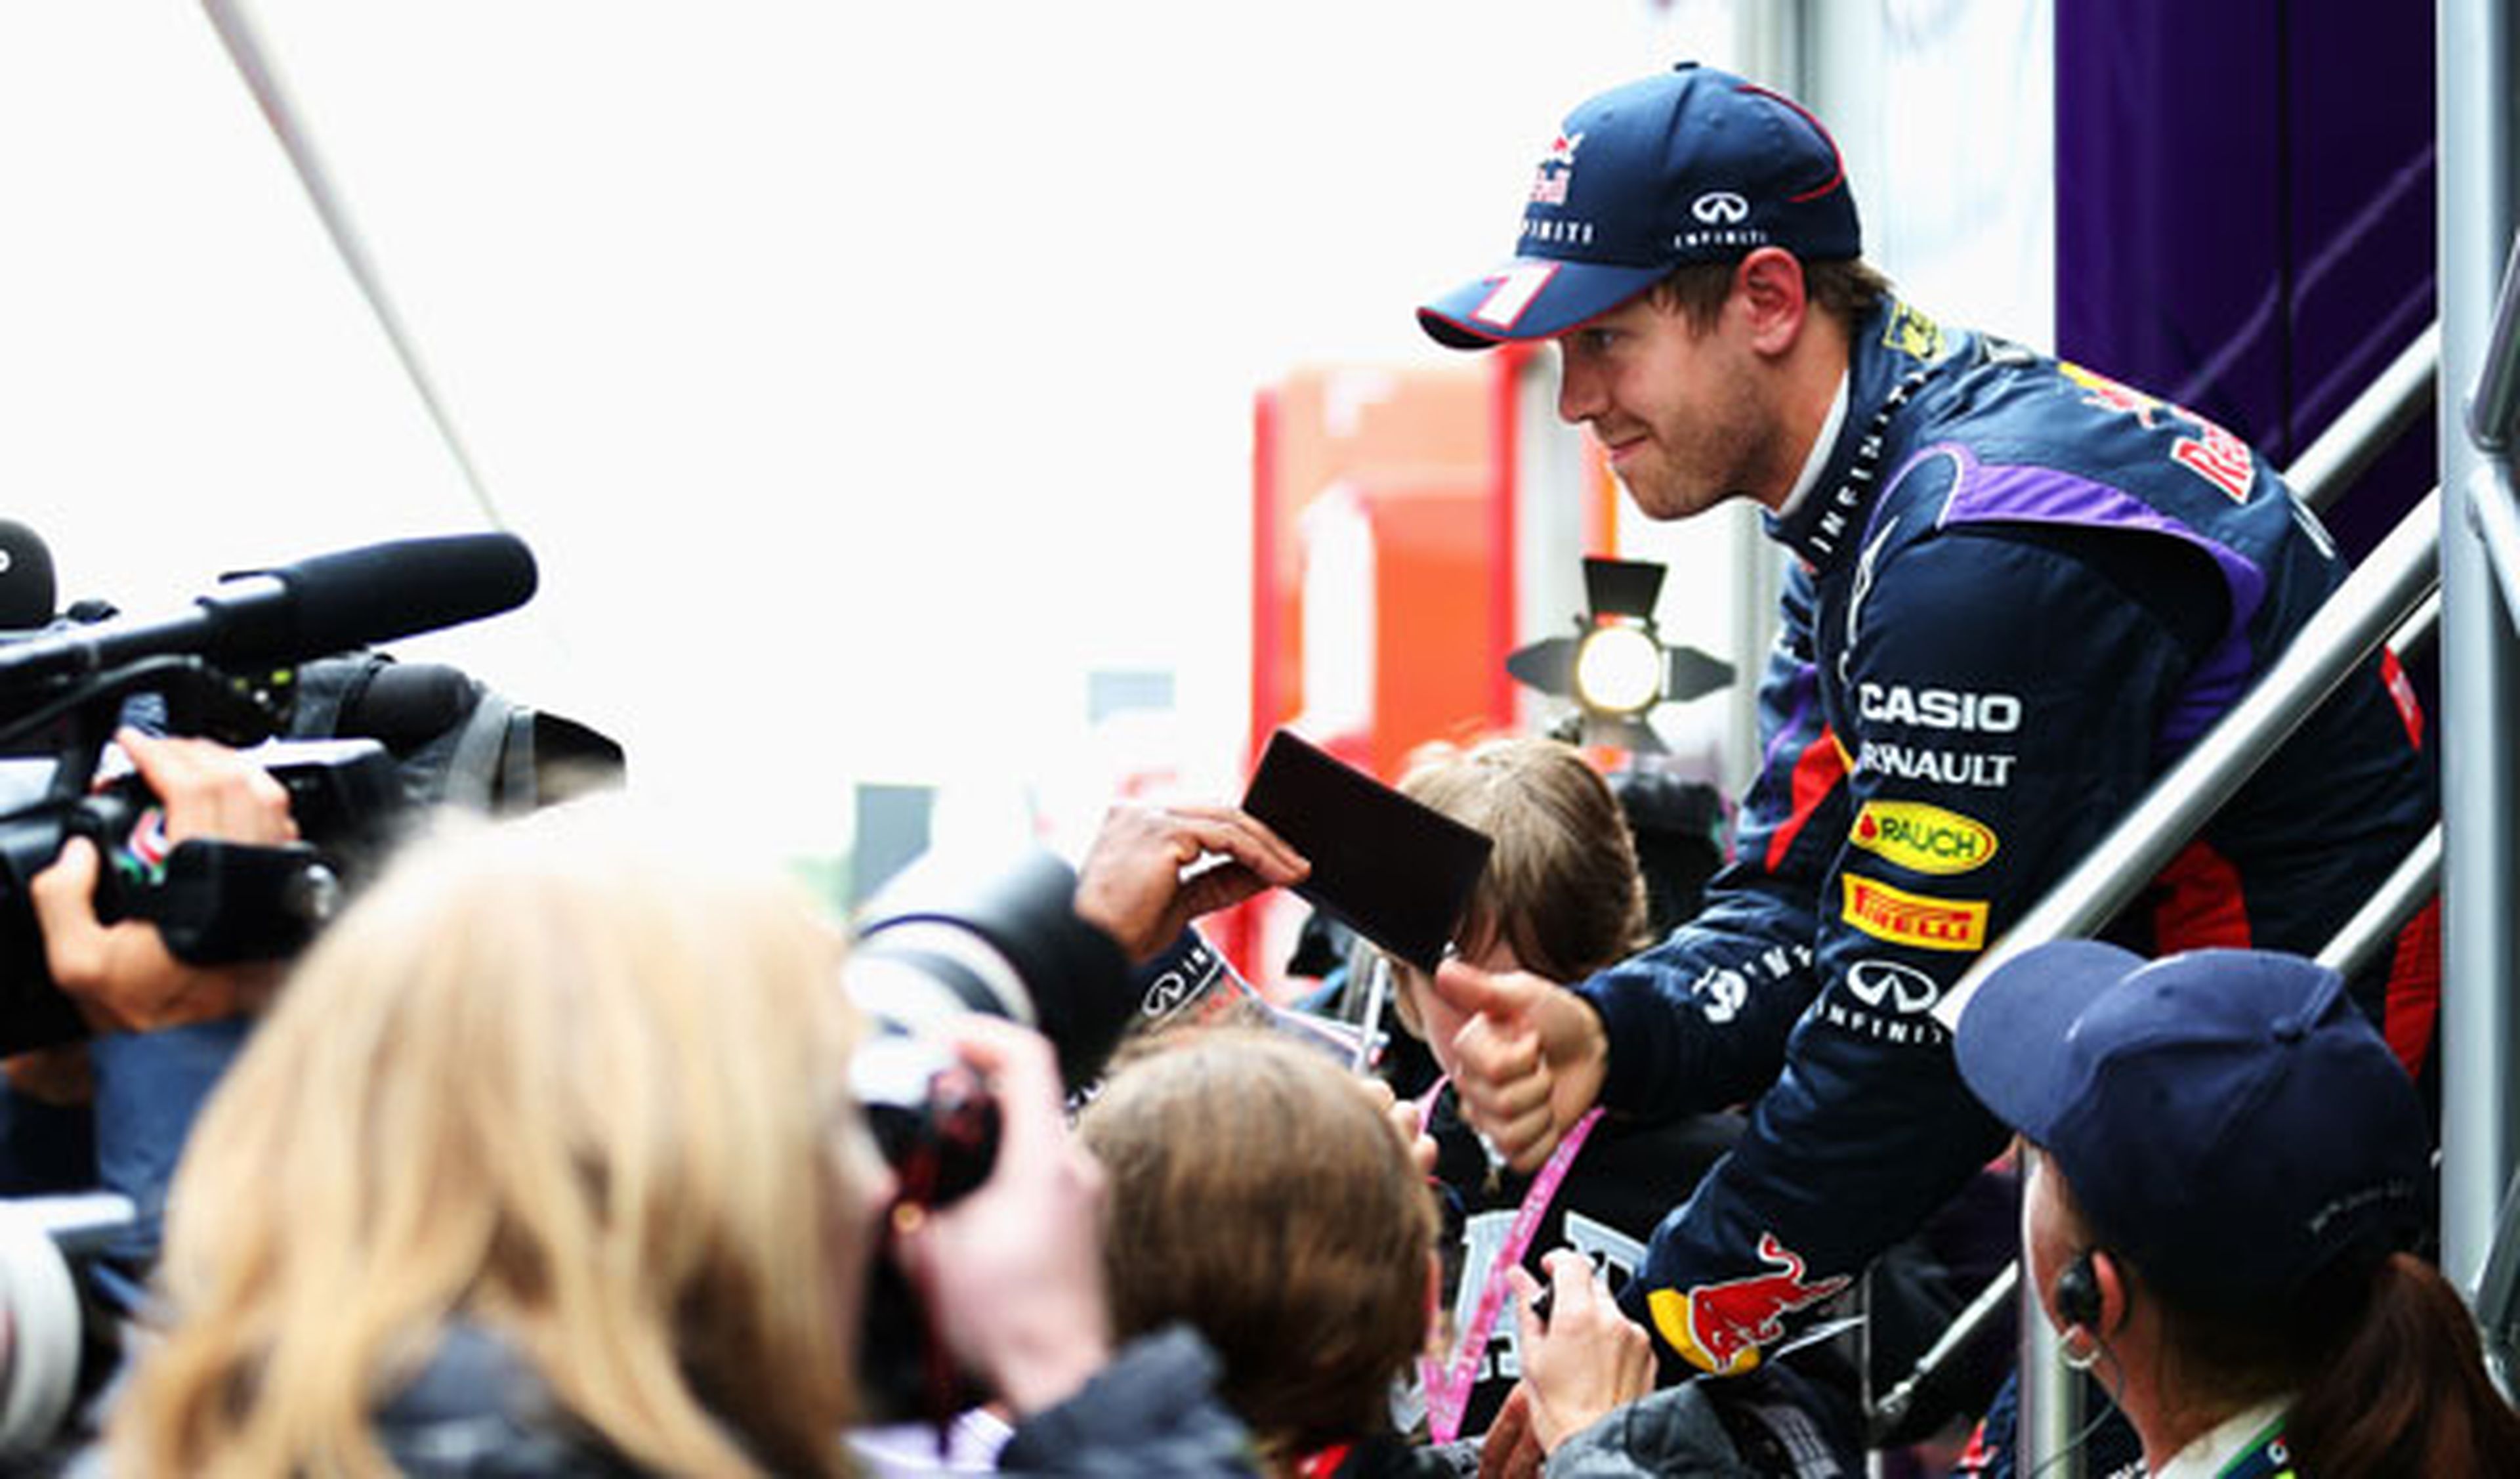 Vettel - Red Bull - 2013